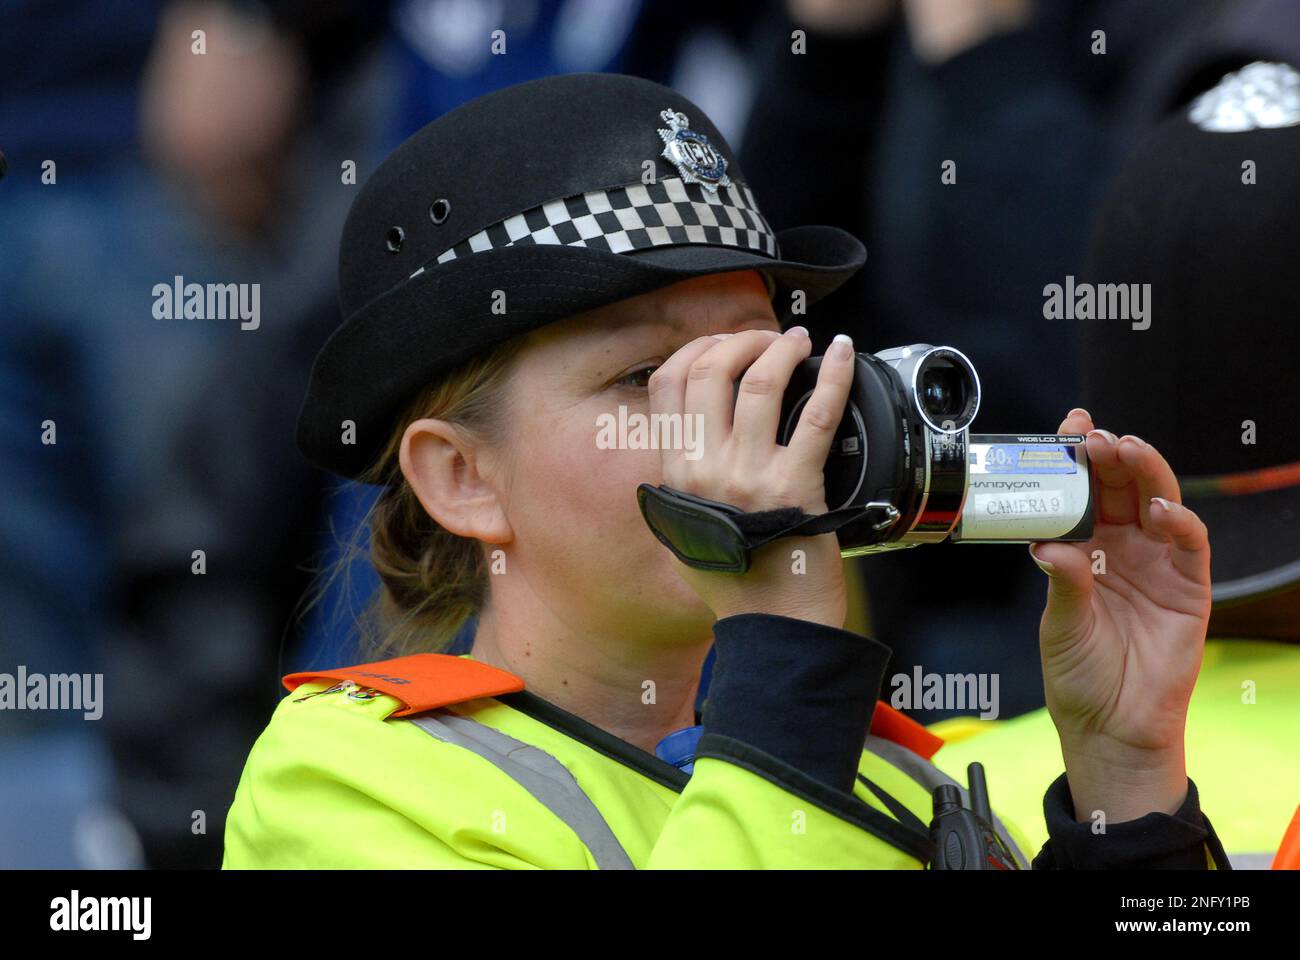 L'officier de police des West Midlands utilise une caméra vidéo pour surveiller les fans de foule de football West Bromwich Albion v Wolverhampton Wanderers 16/10/2011 Banque D'Images